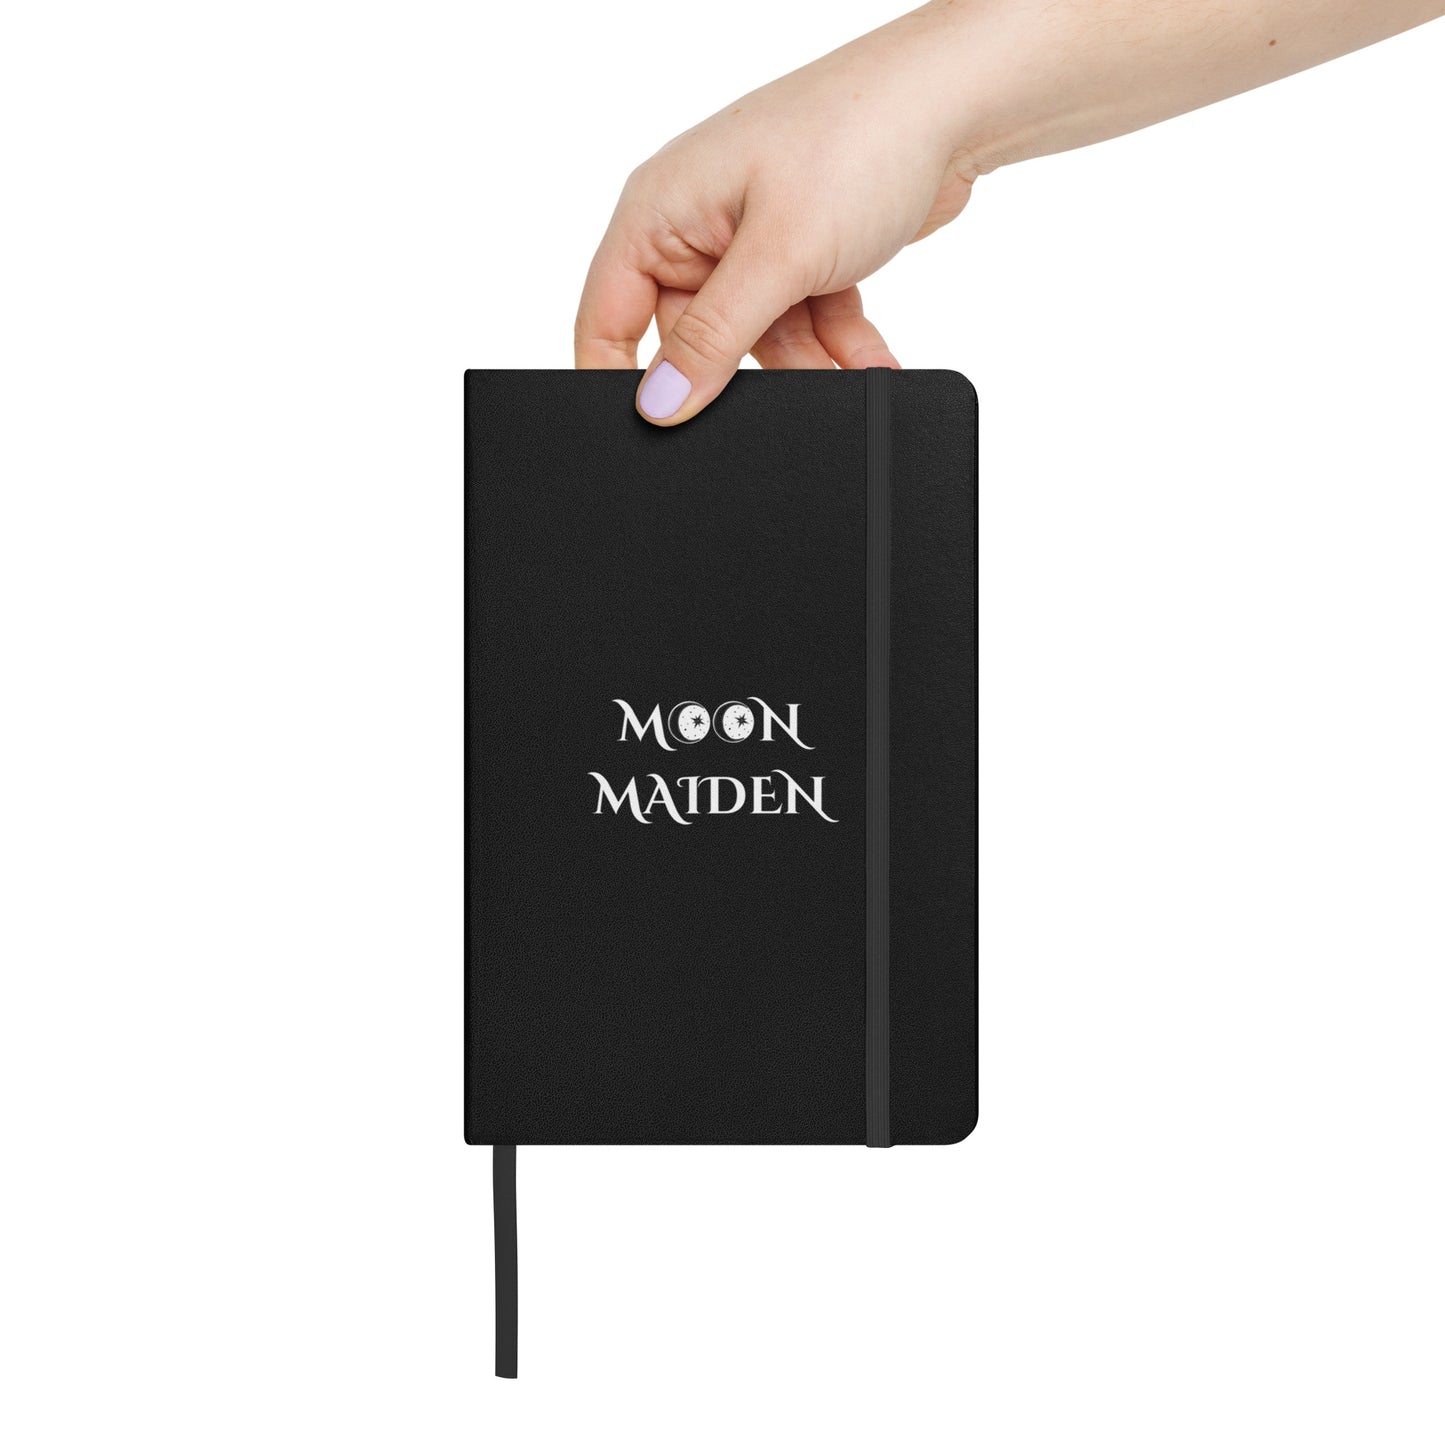 MOON MAIDEN Dark Hardcover bound notebook